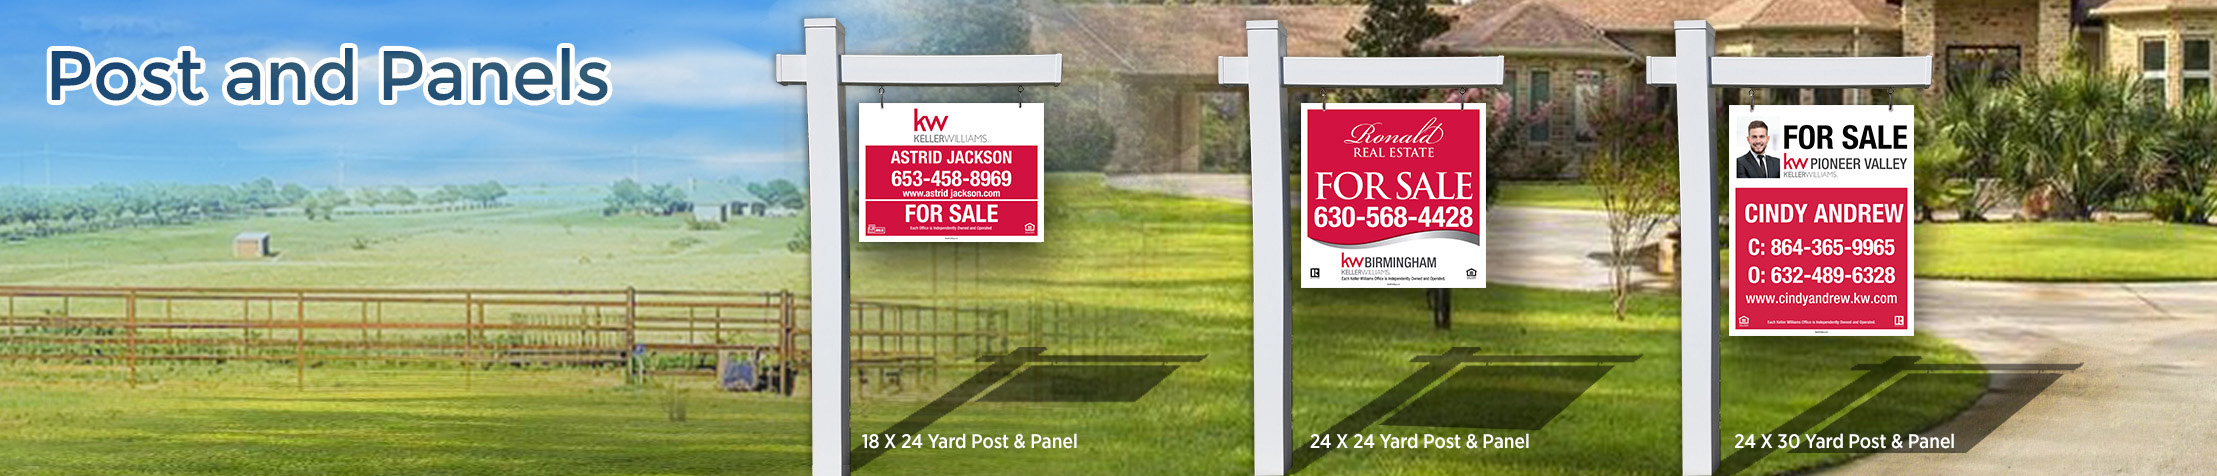 Keller Williams Real Estate Post and Panel - KW approved vendor real estate signs | BestPrintBuy.com